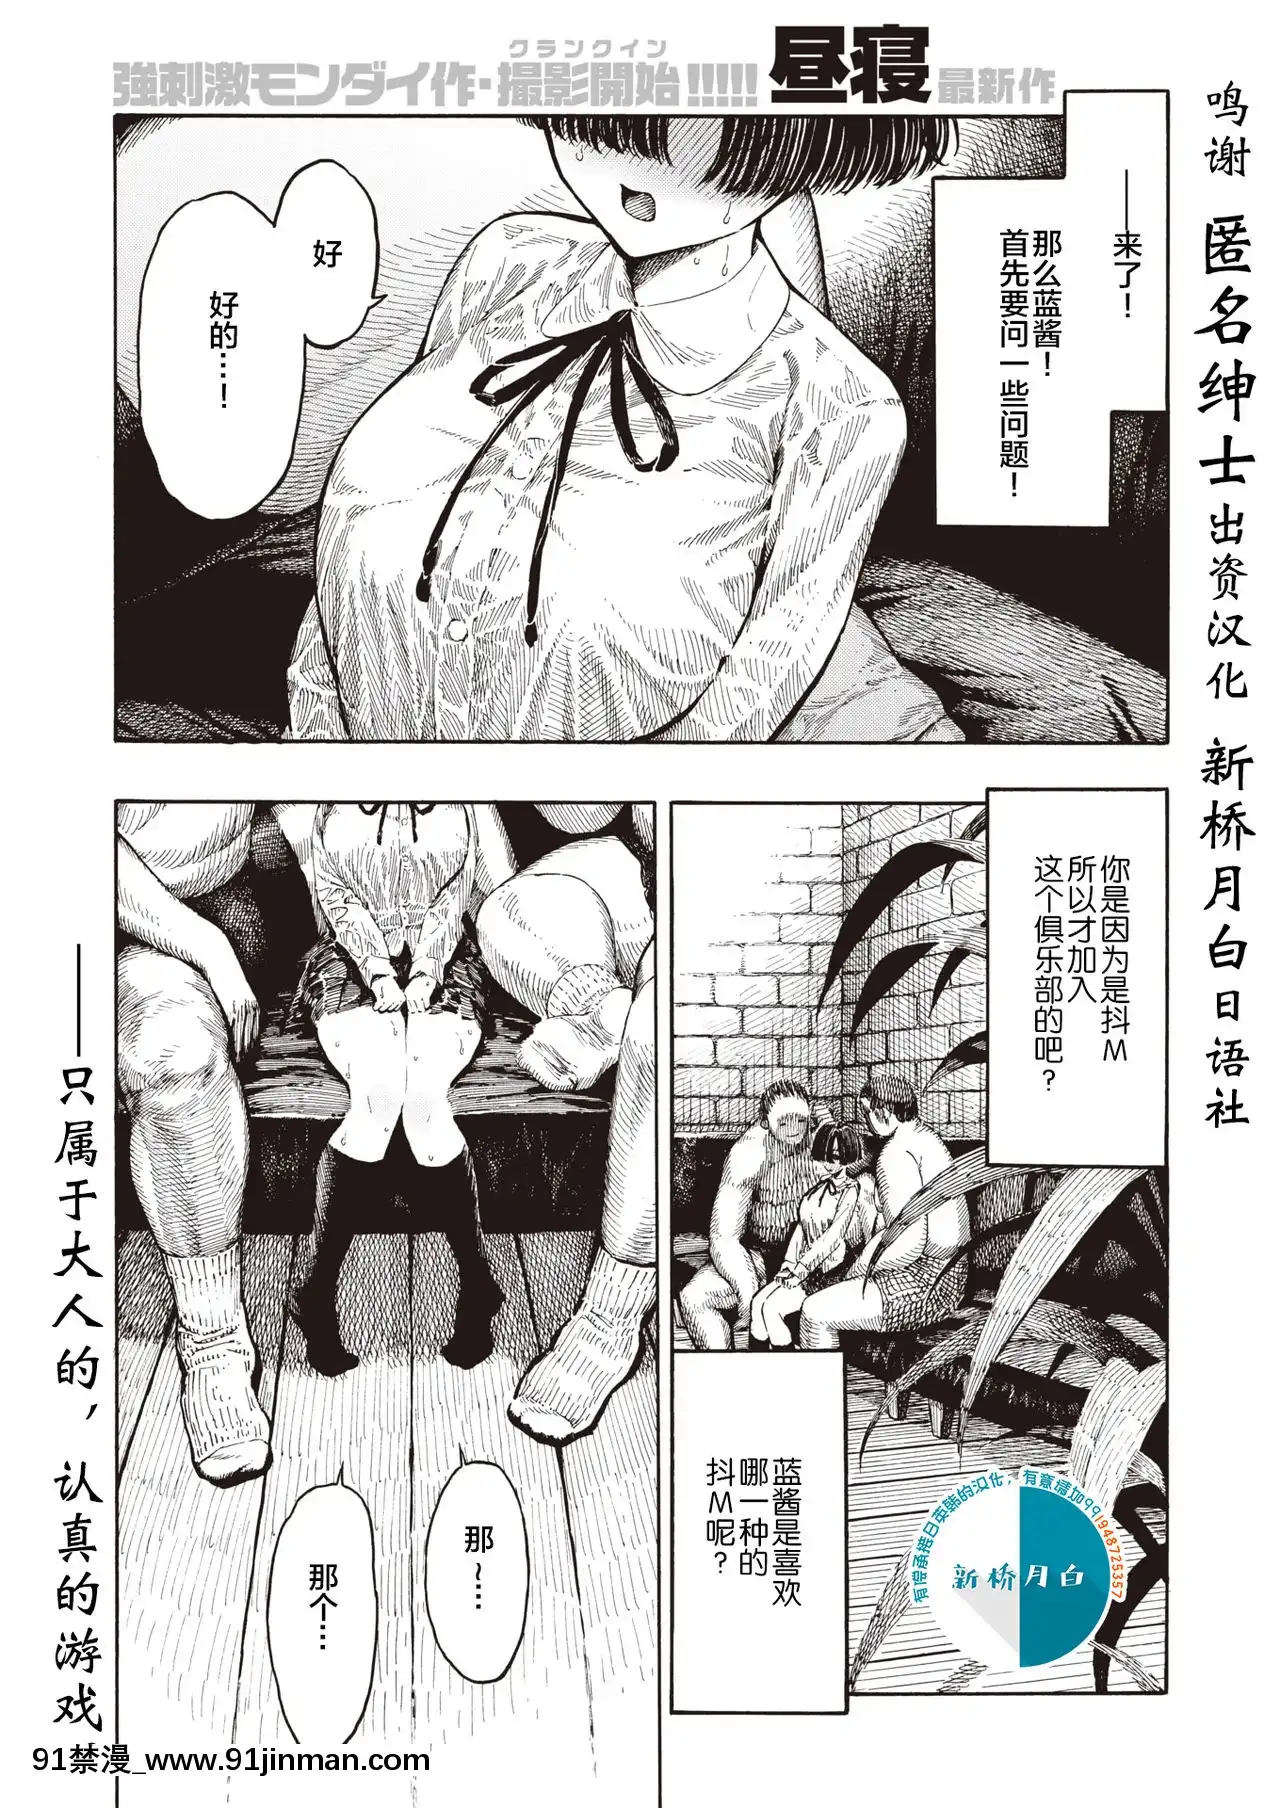 [Day and Sleep] Bộ phận trò chơi của quý ông (COMIC Kuai Tian số tháng 8 năm 2020) [Sinicization of Shinbashi Yuebai Japanese Club] [Kỹ thuật số]【switch girl truyện tranh】